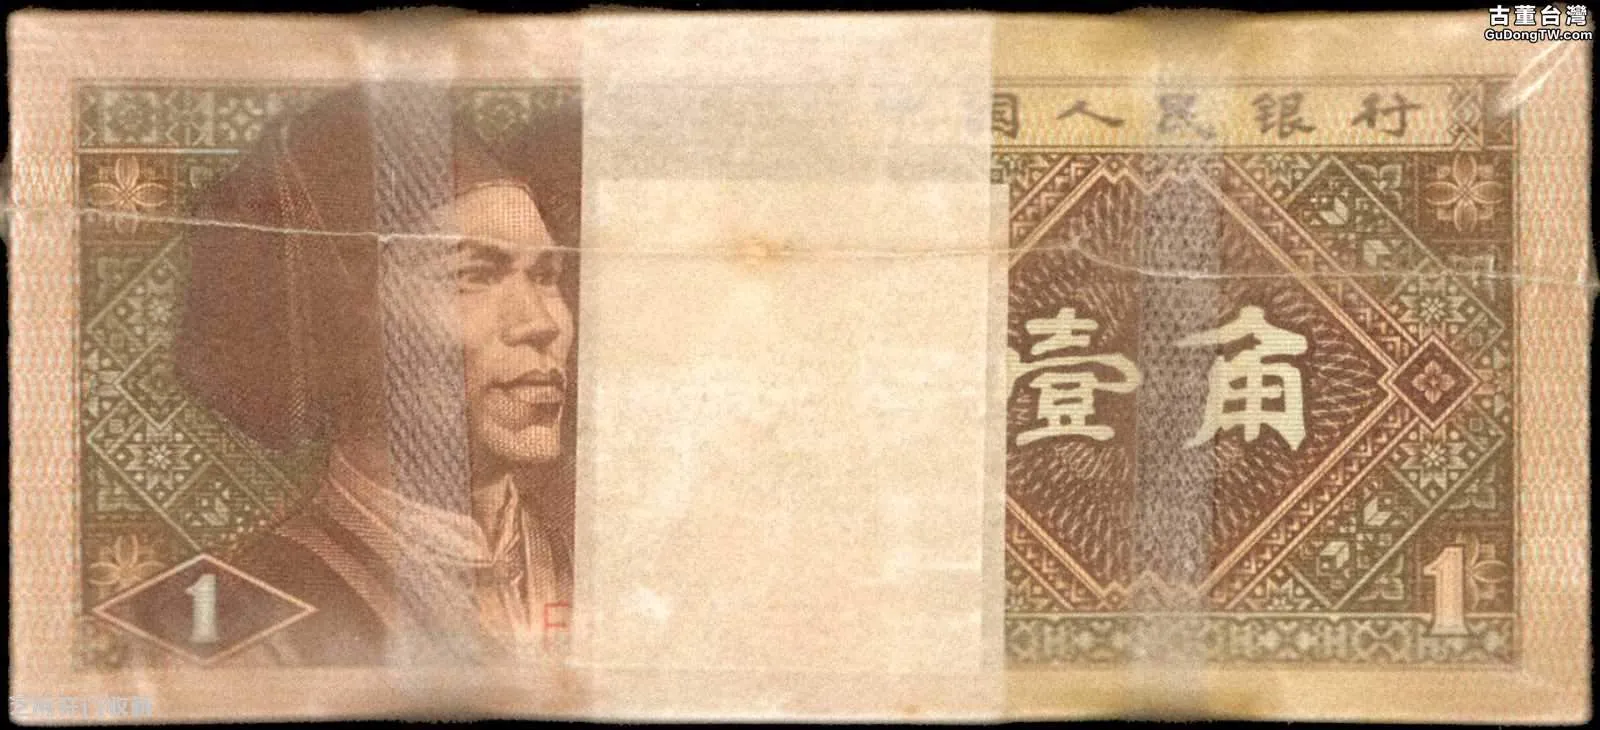 1980年1角錢紙幣現在值多少